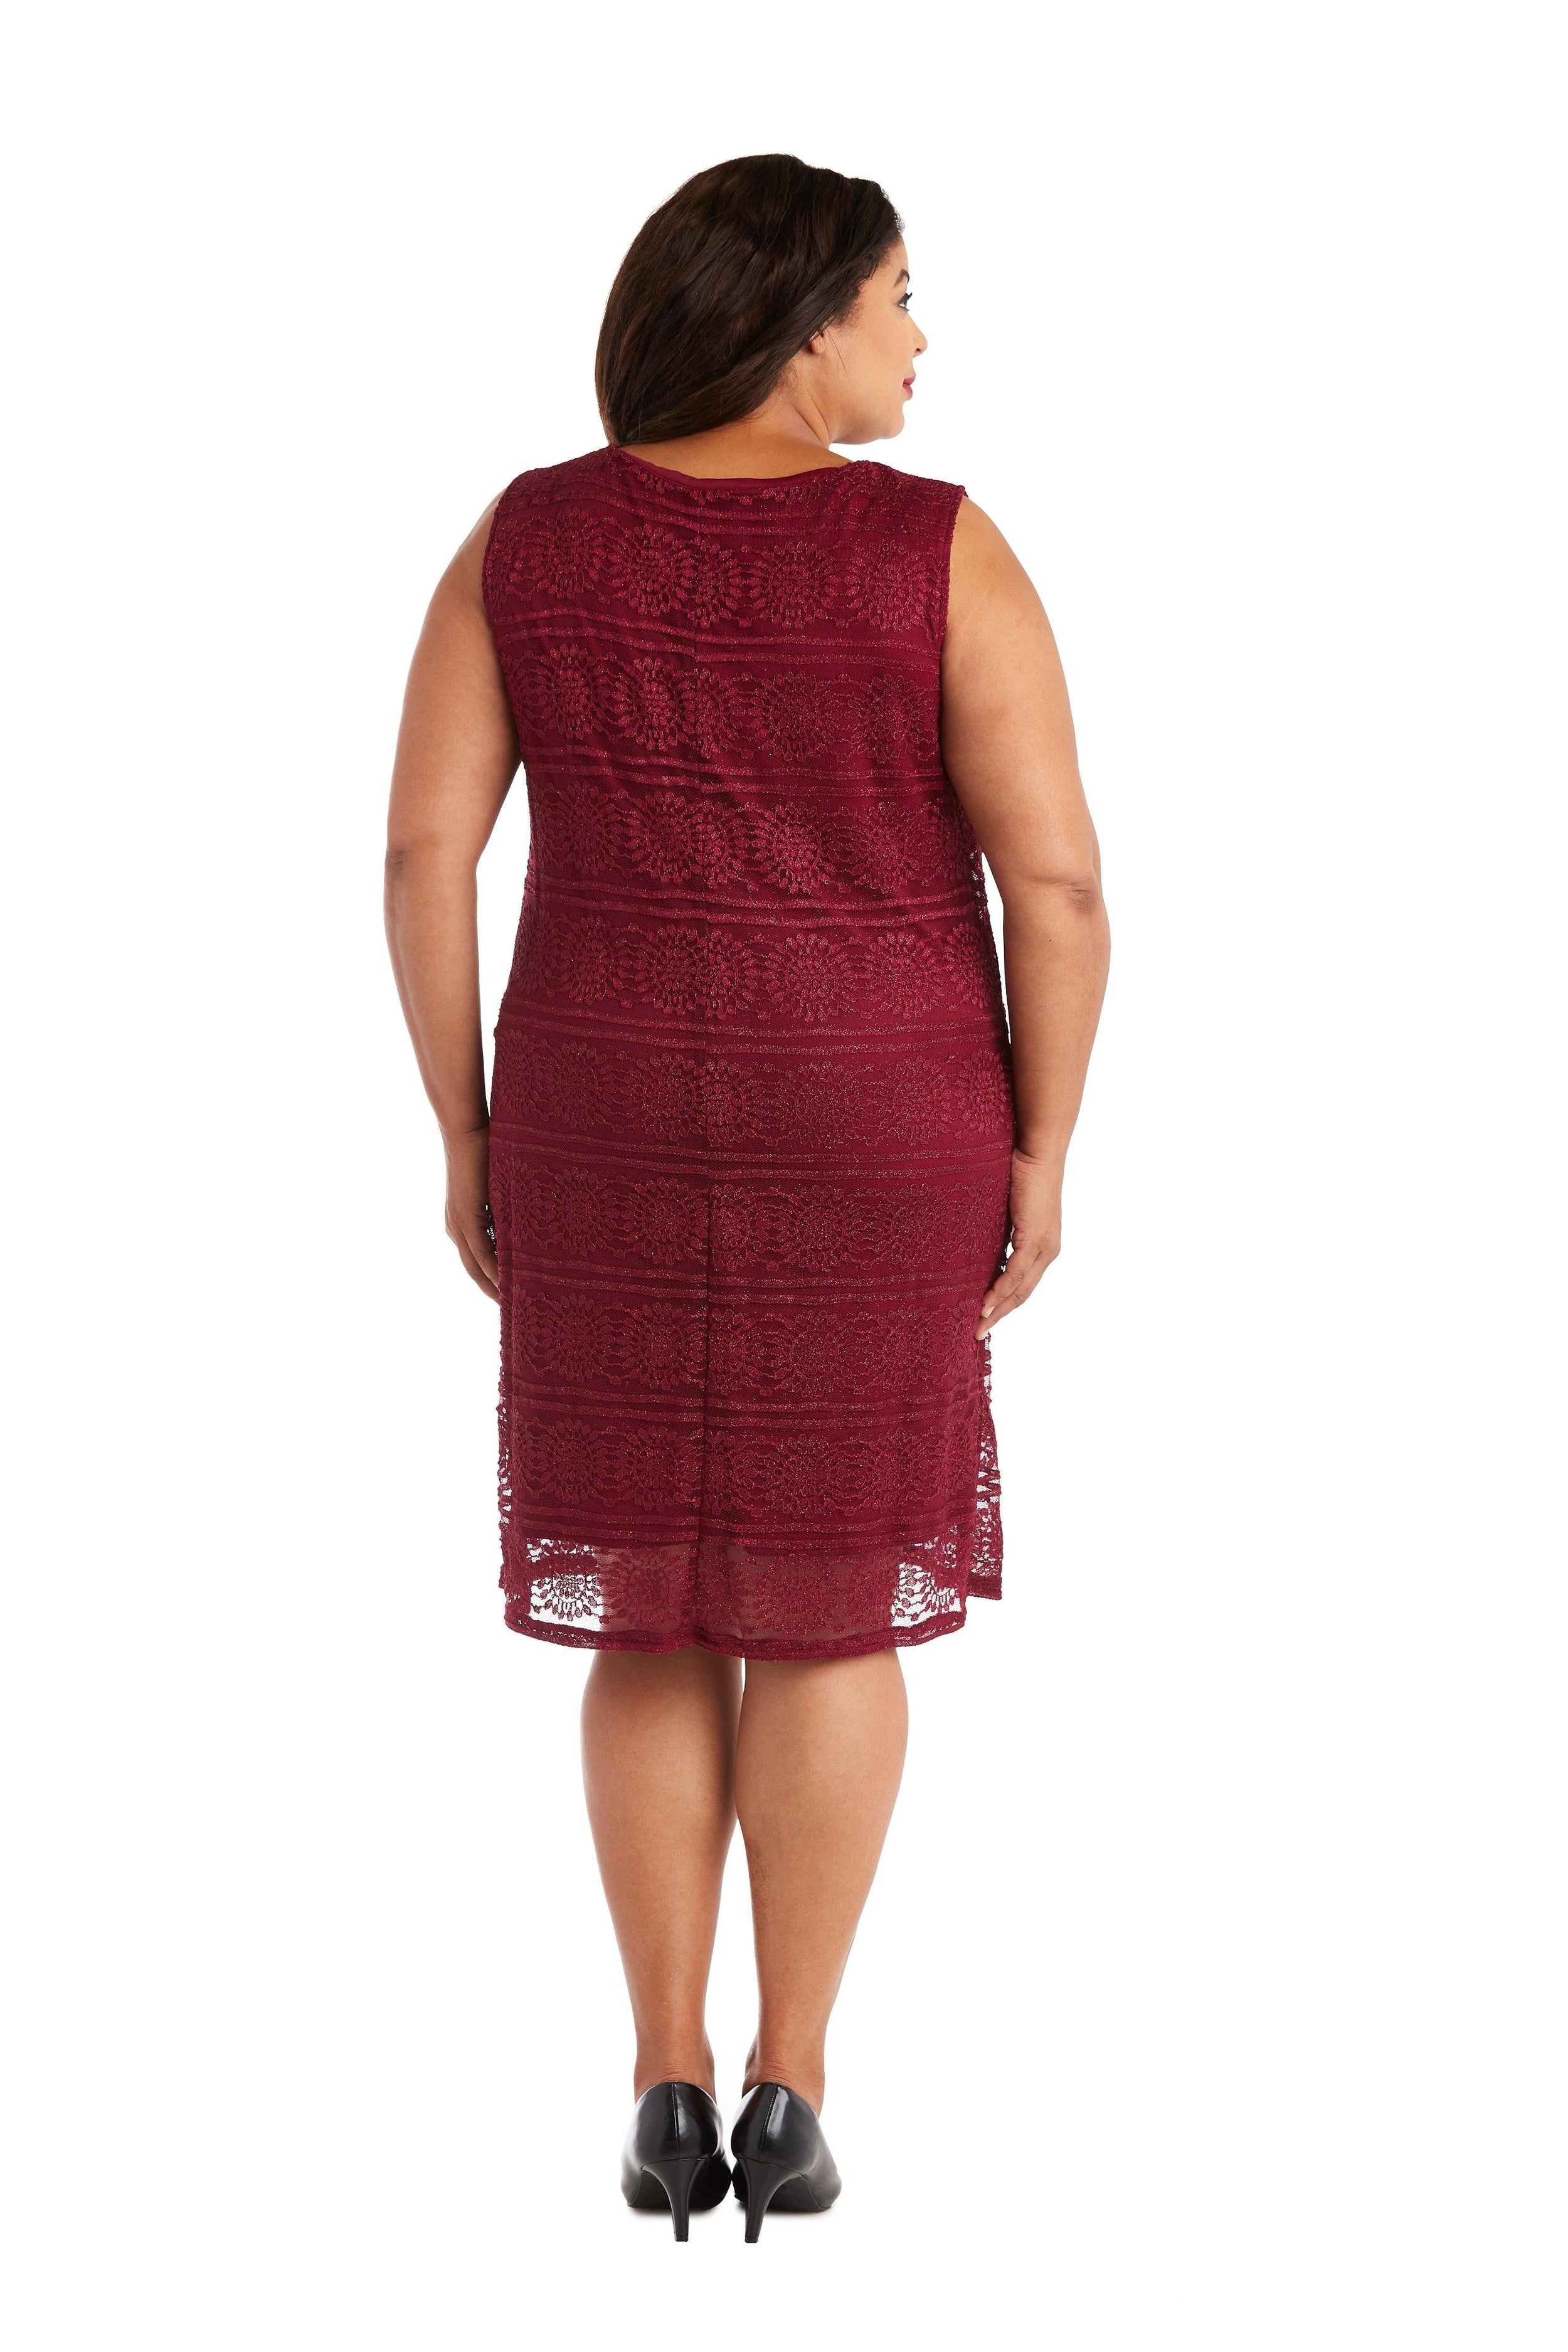 R&M Richards Short Plus Size Jacker Dress 5558W - The Dress Outlet